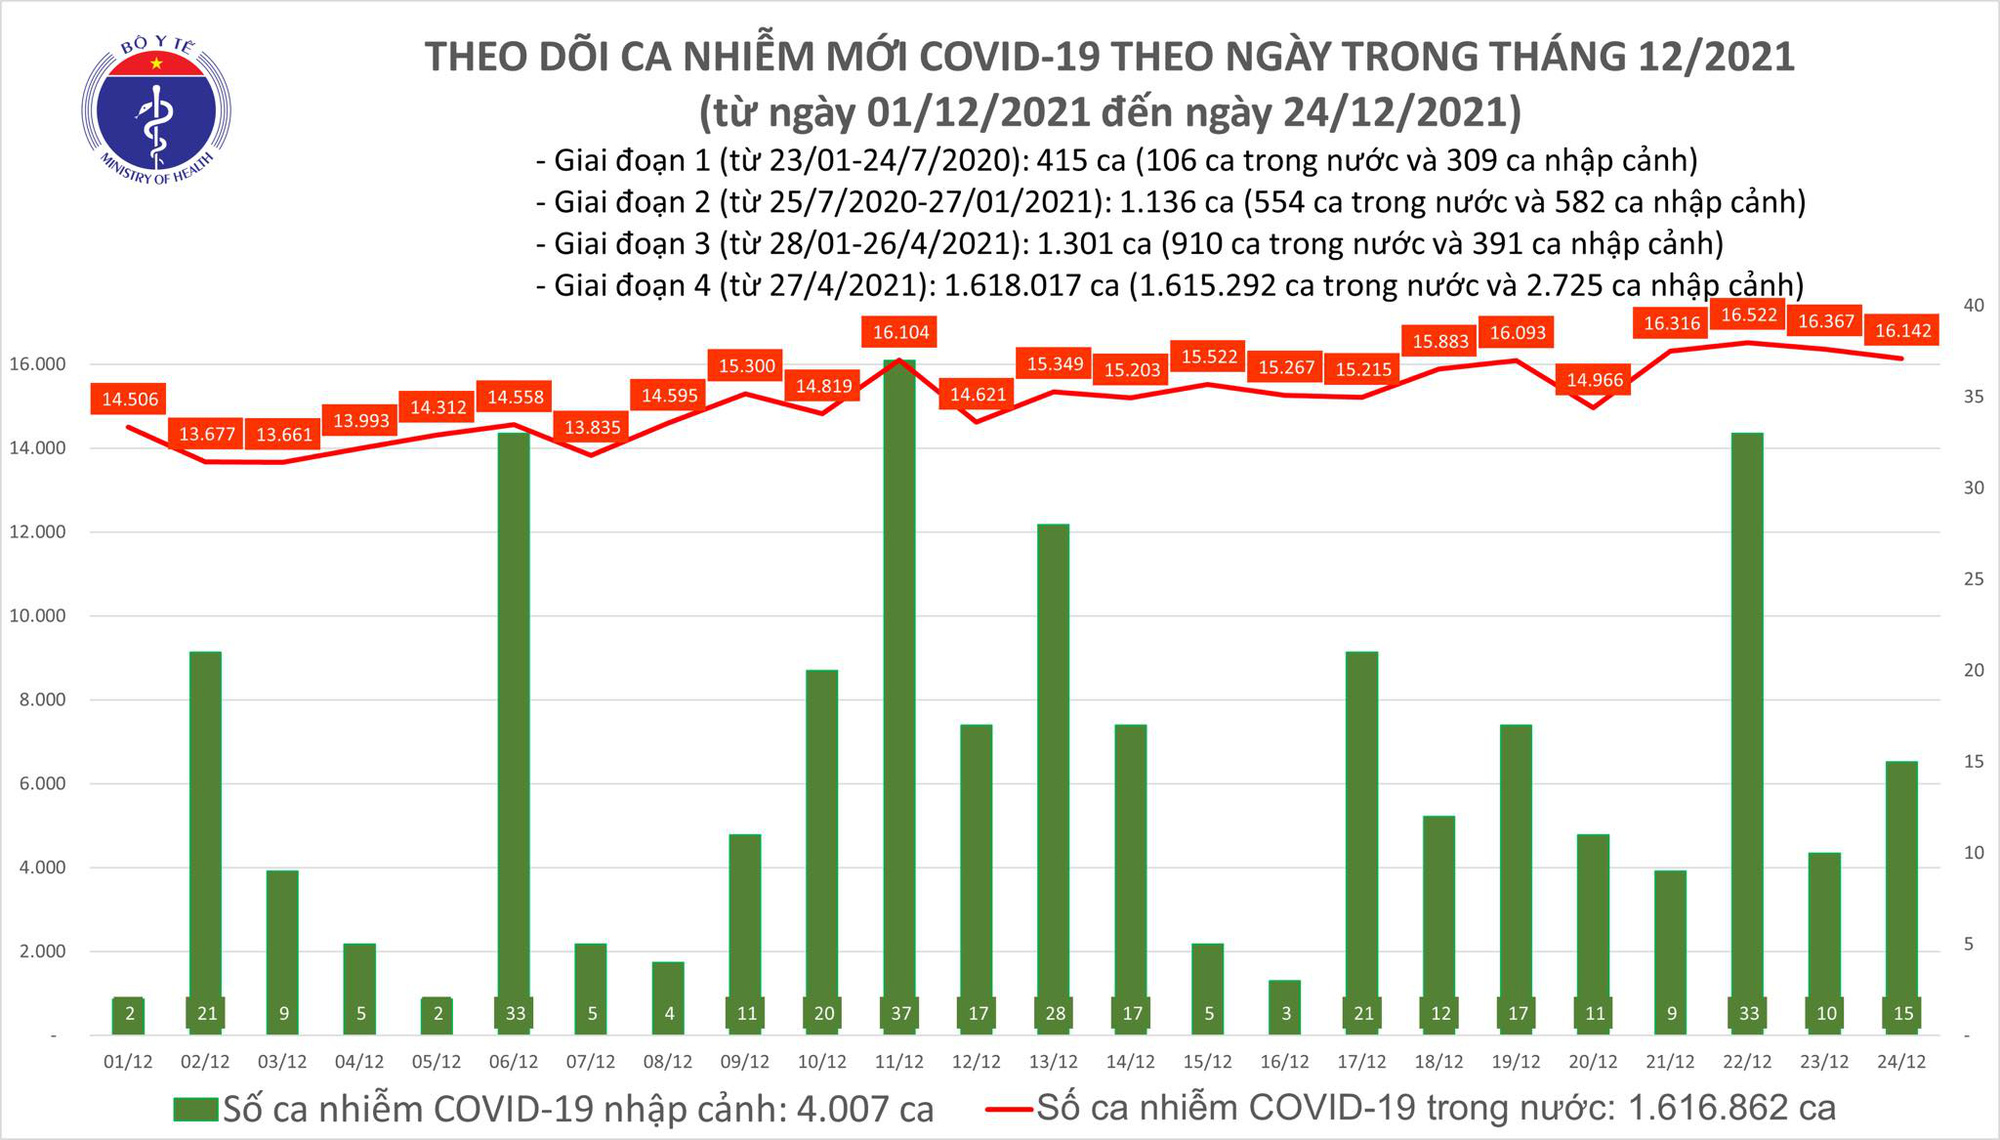 Ngày 24/12: Có 16.157 ca mắc COVID-19 tại 62 tỉnh, thành; Hà Nội vẫn nhiều nhất với 1.834 ca - Ảnh 2.